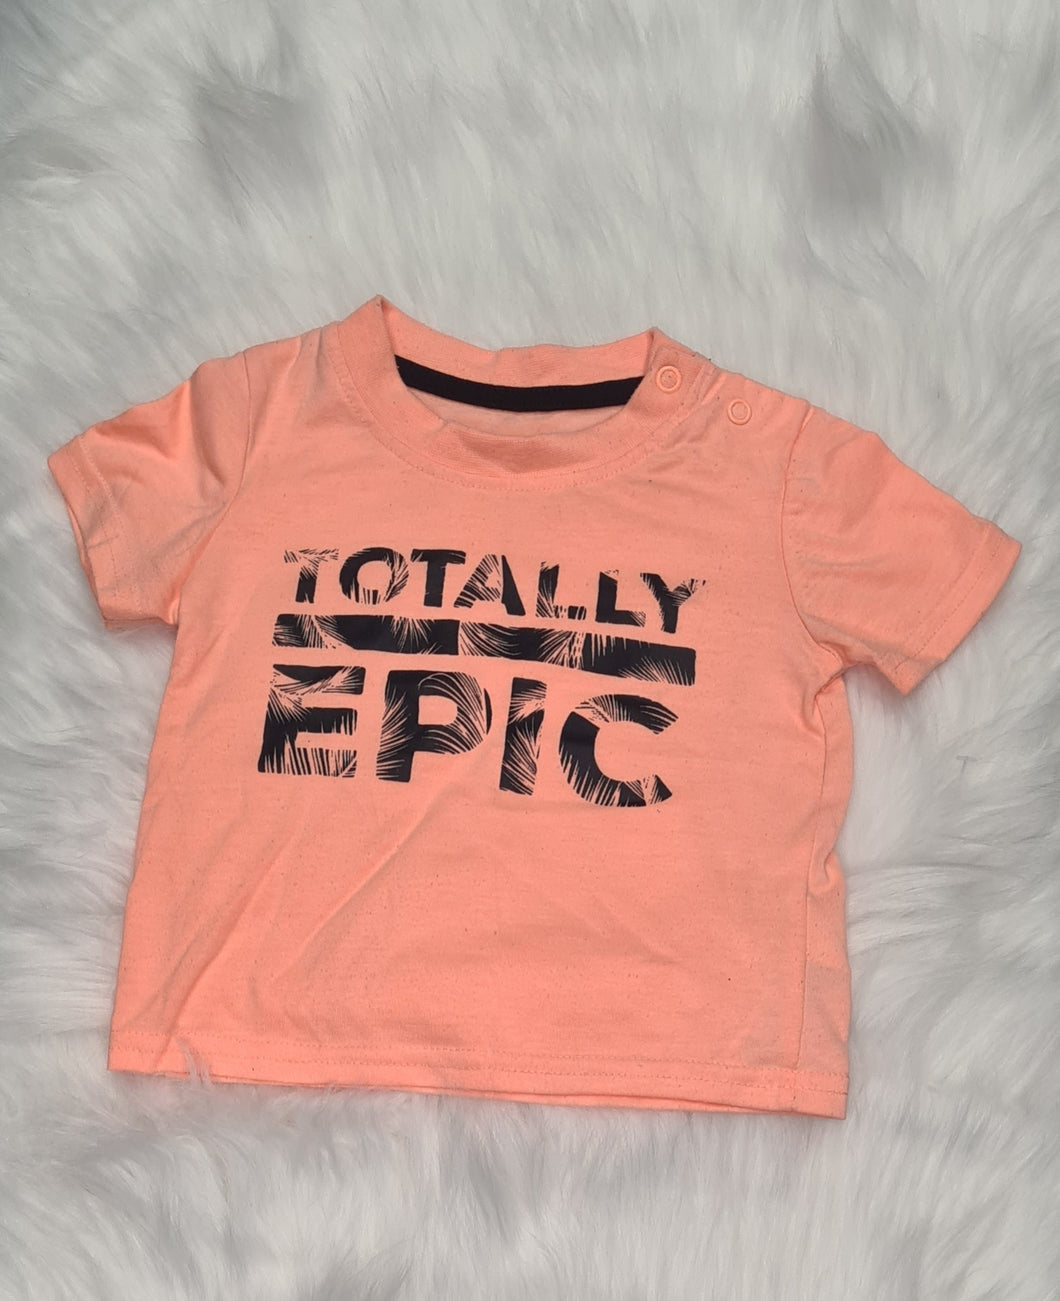 Boys 6-9 Months - Orange T-Shirt - Totally Epic Motif